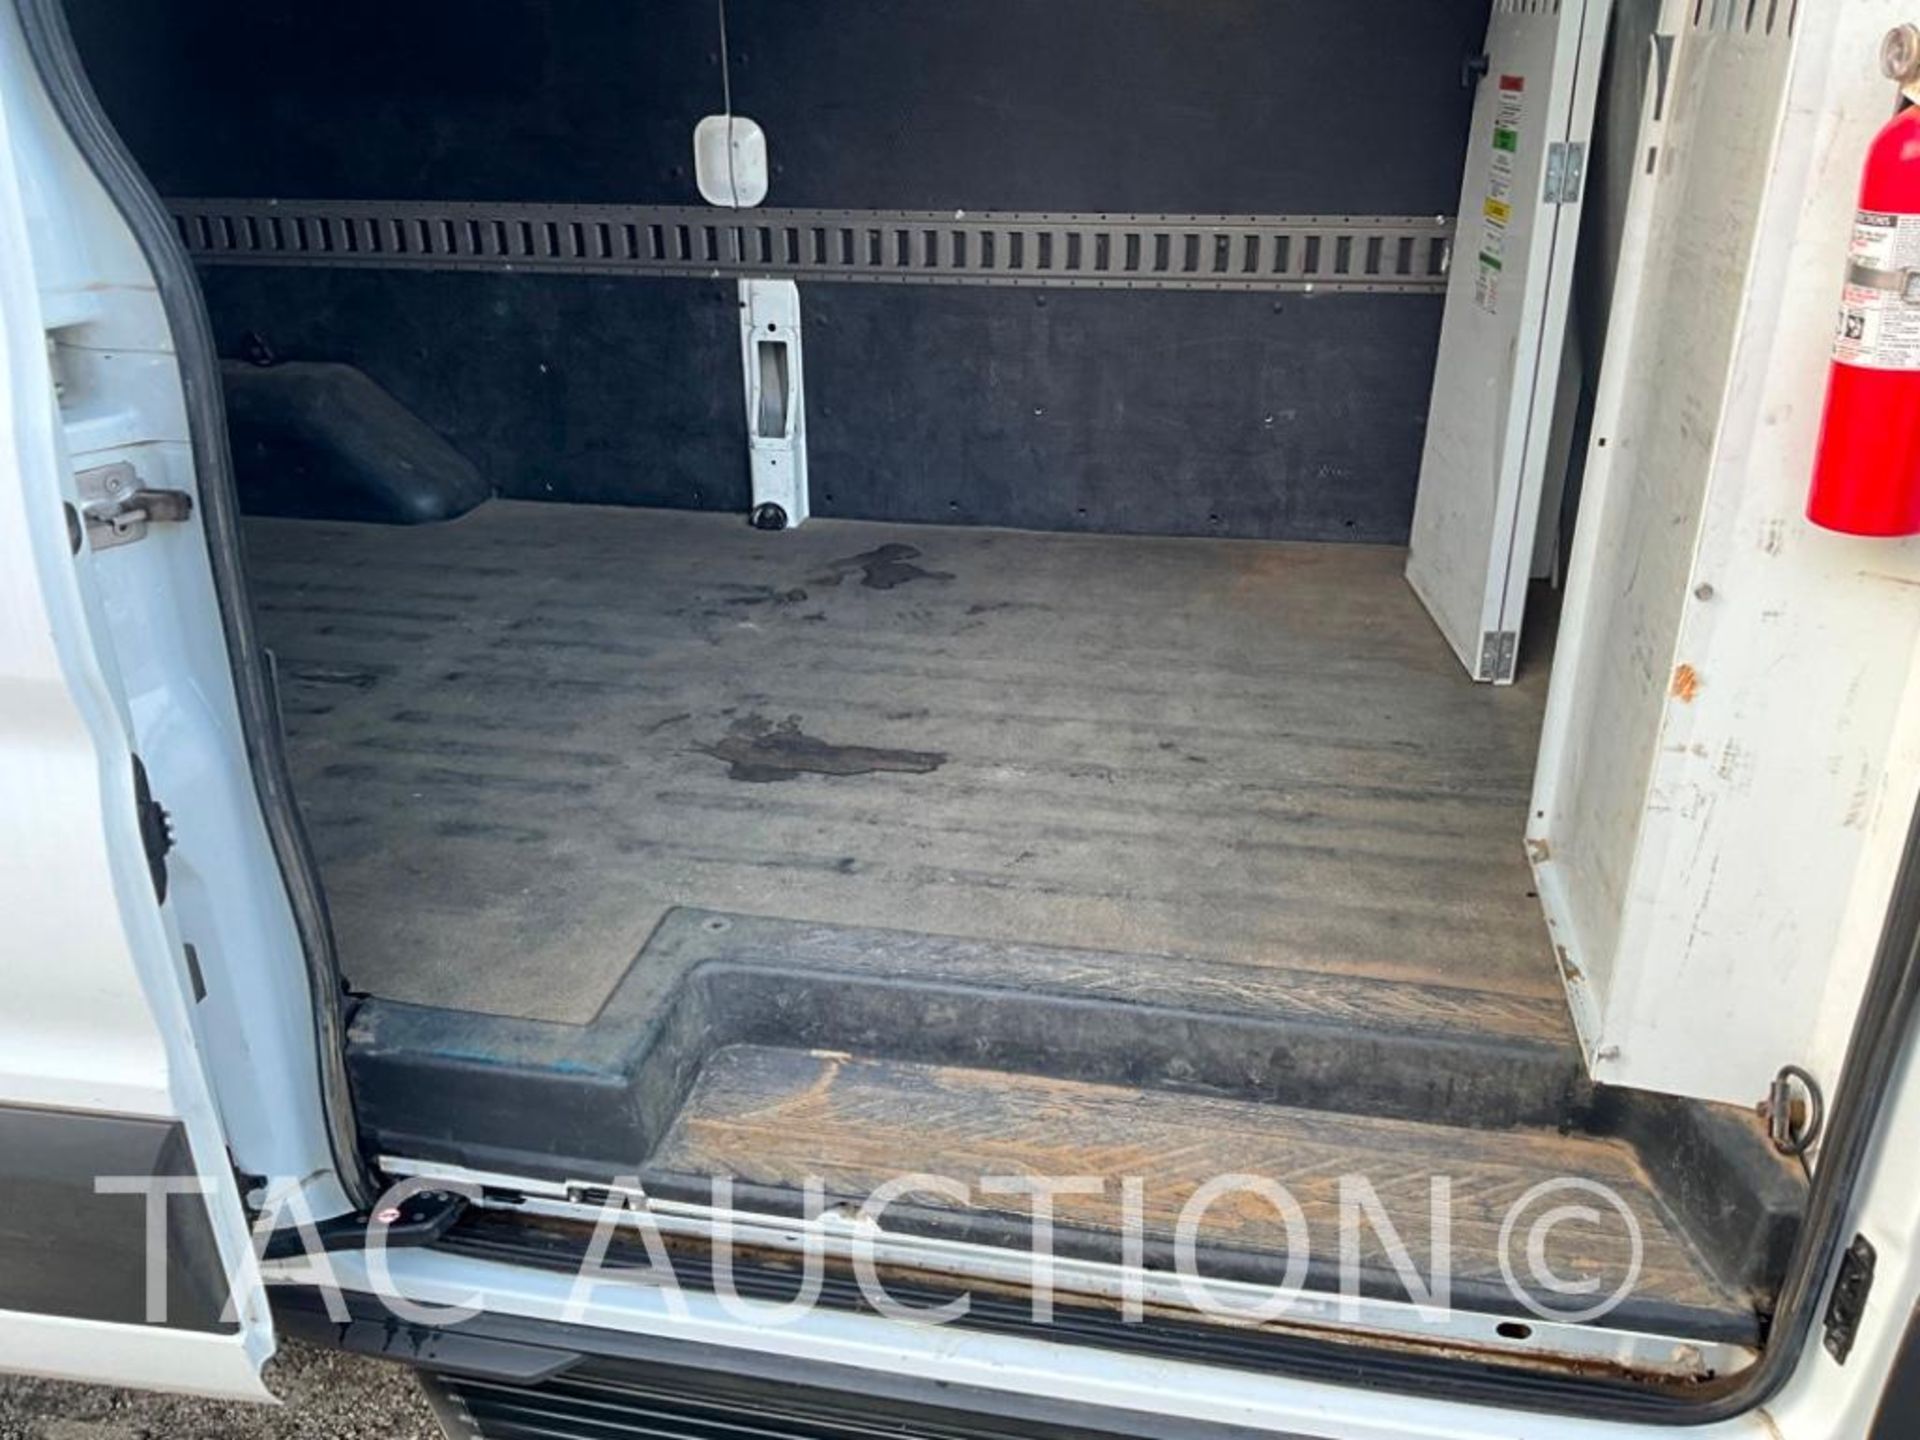 2019 Ford Transit 150 Cargo Van - Image 29 of 46